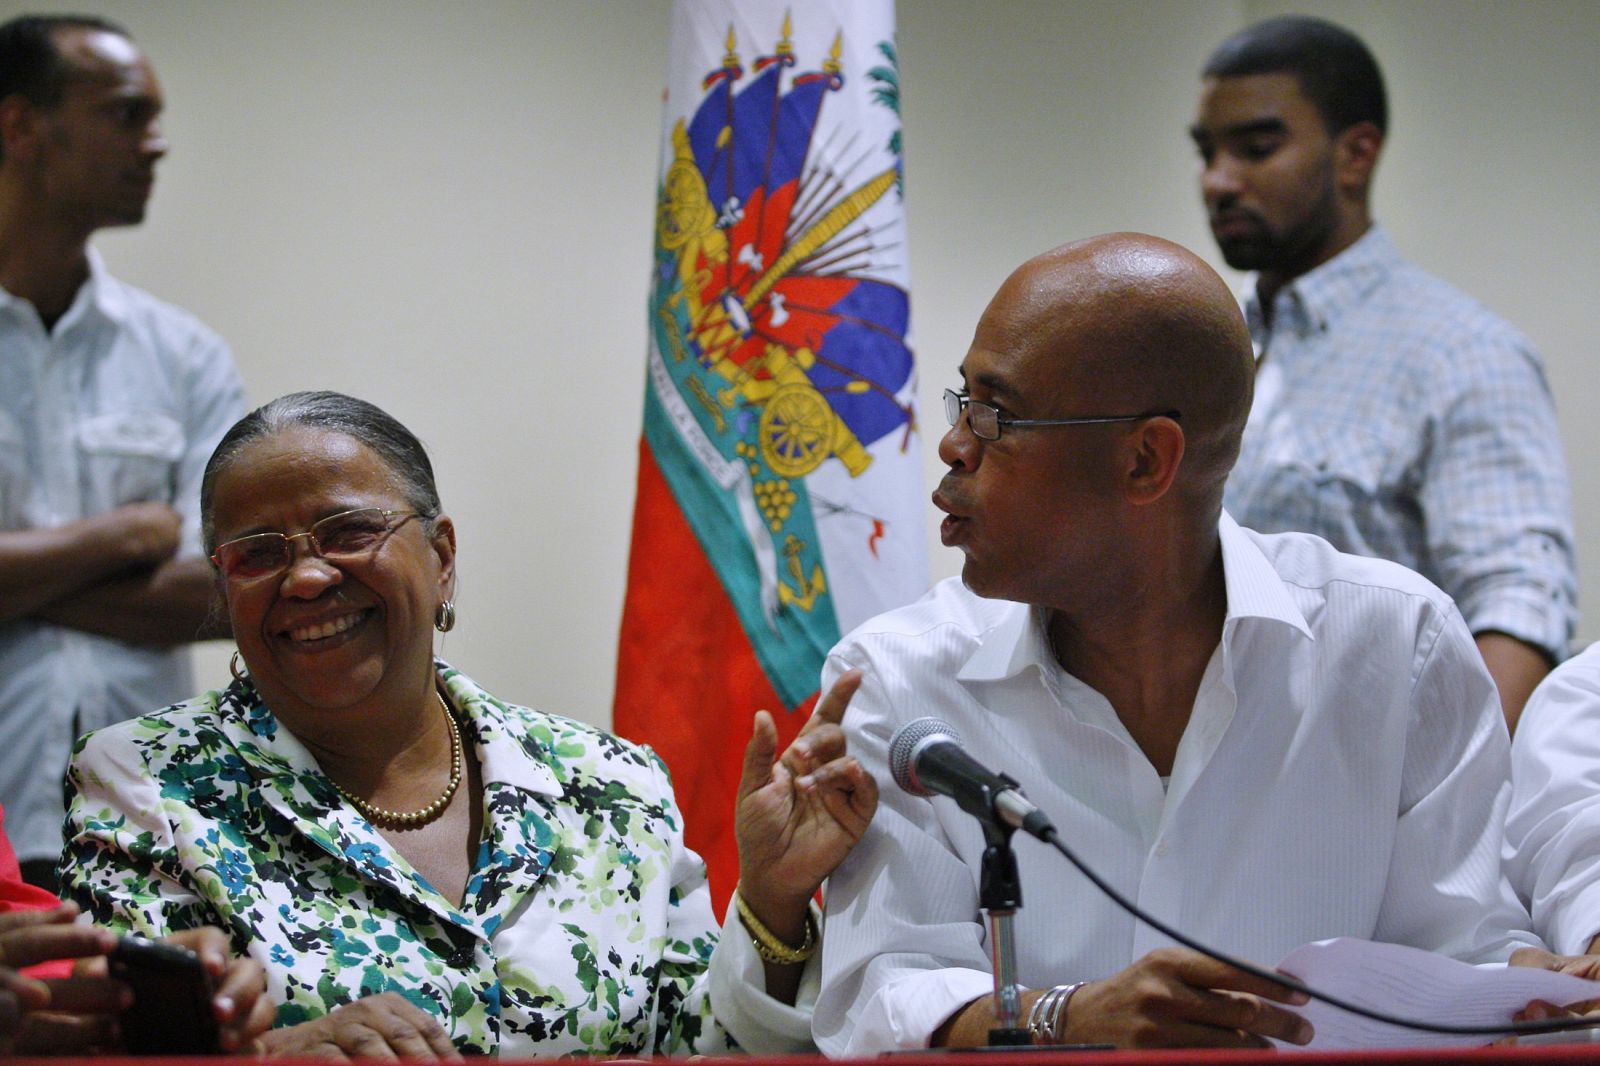 Los candidatos presidenciales haitiano, Mirlande Manigat y Michel Martelly conversan juntos en una fotografía de archivo